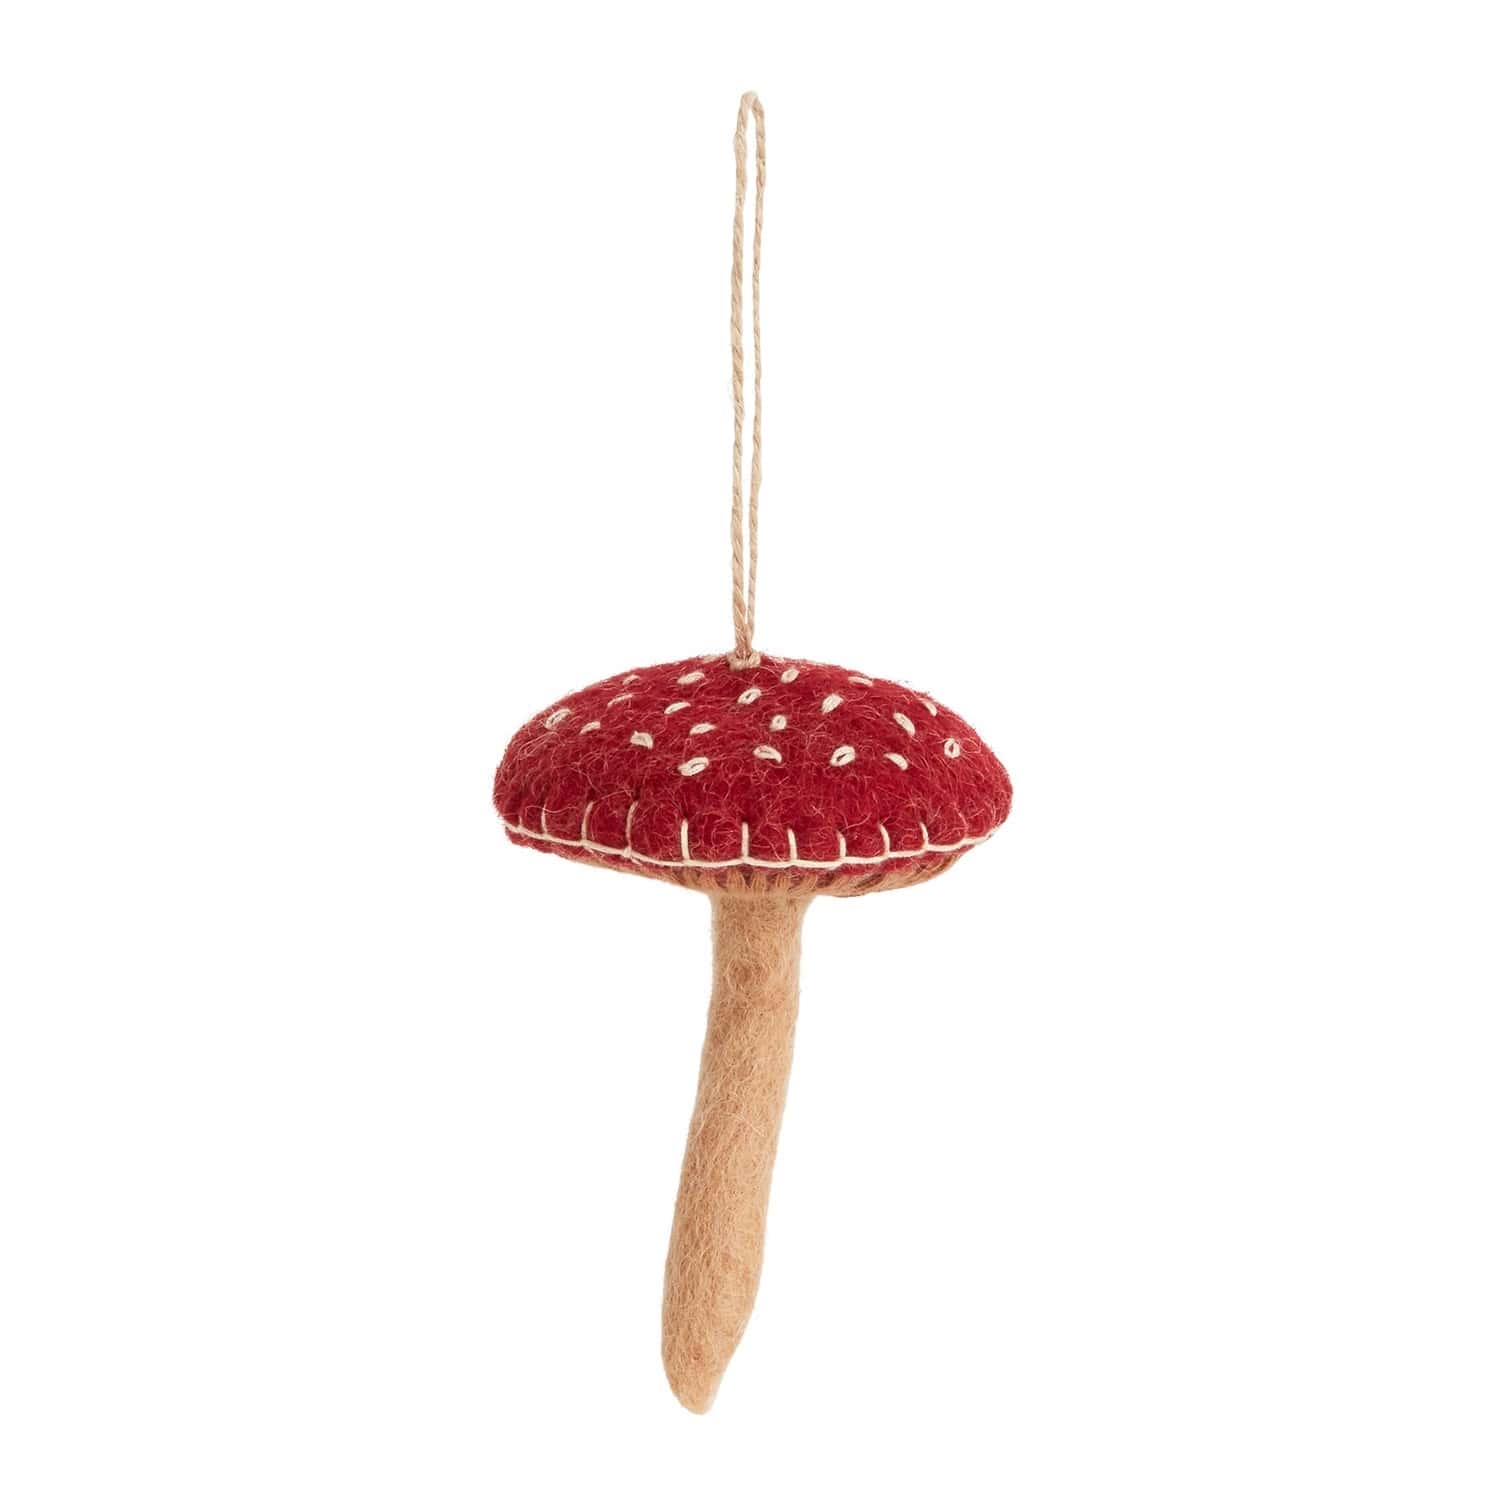 Fun Fungi Ornament Set of 20 By Accent Decor | Ornaments | Modishstore - 5